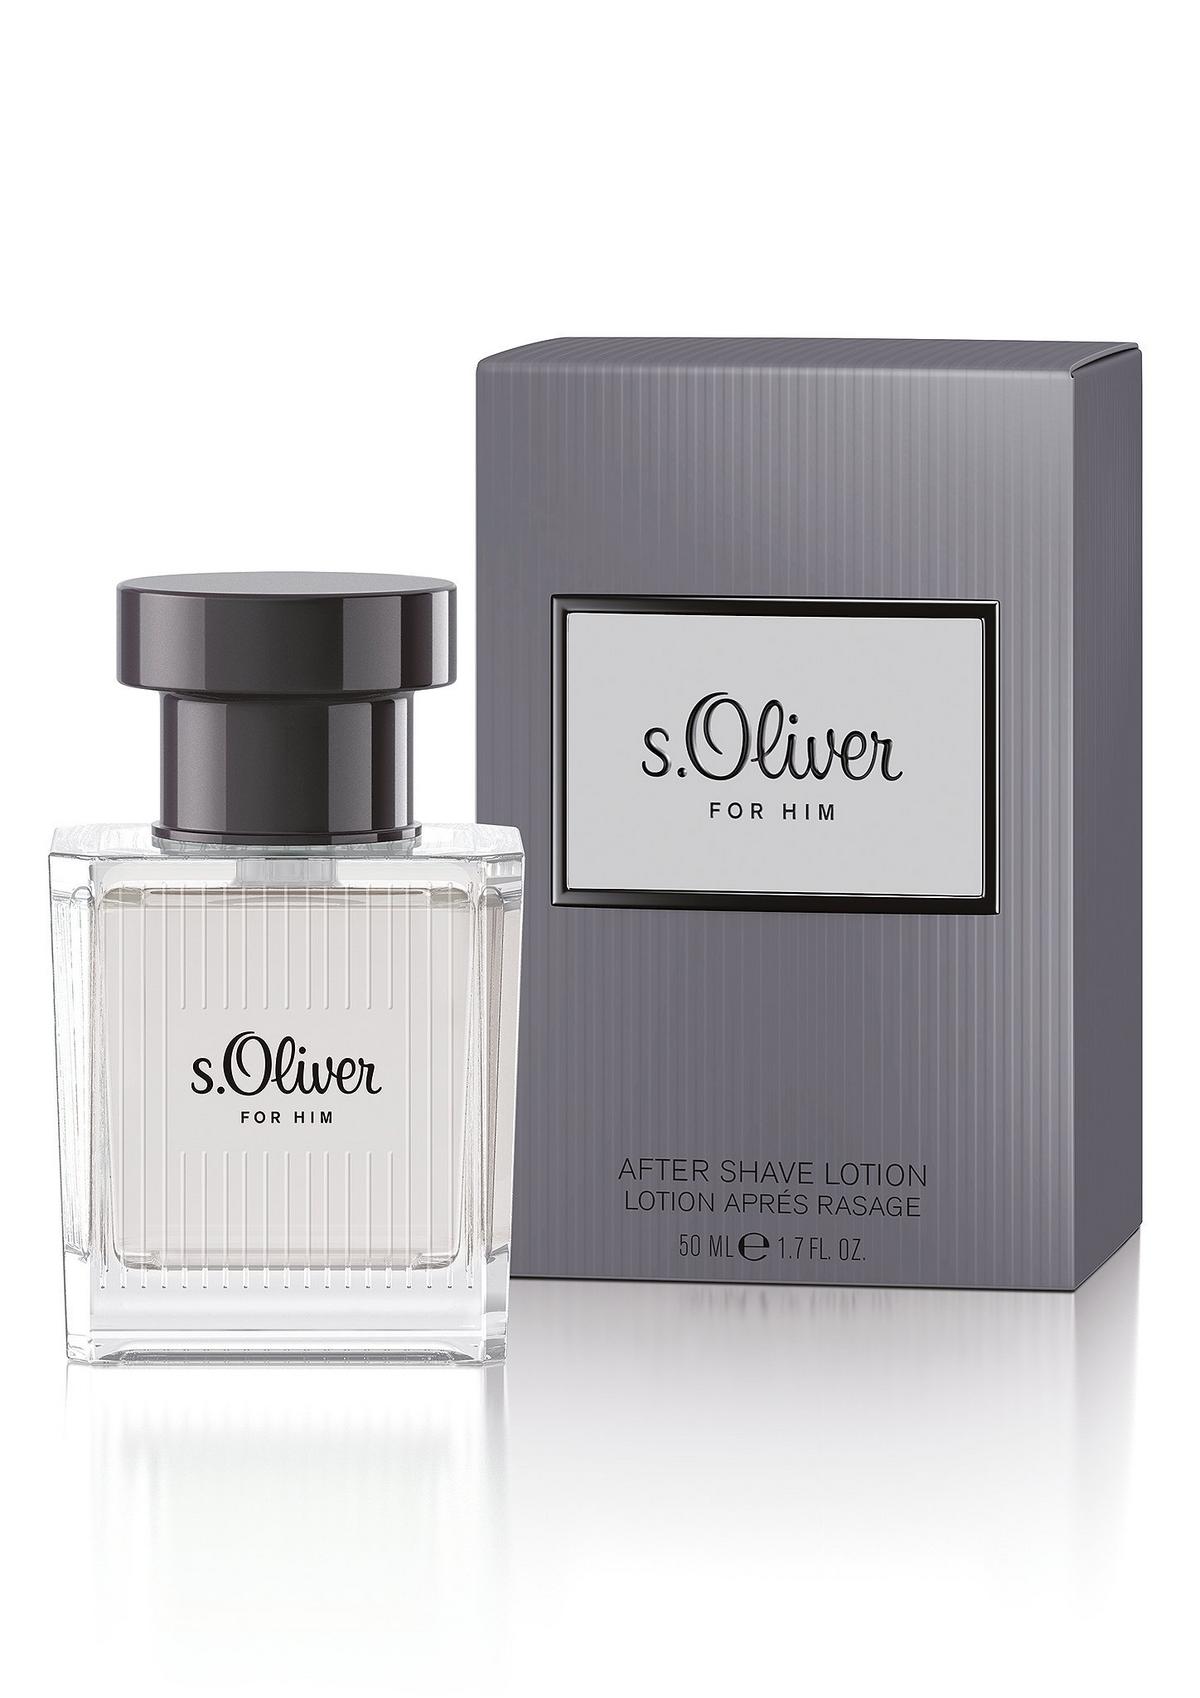 s.Oliver s.Oliver For Him After Shave, 50 ml